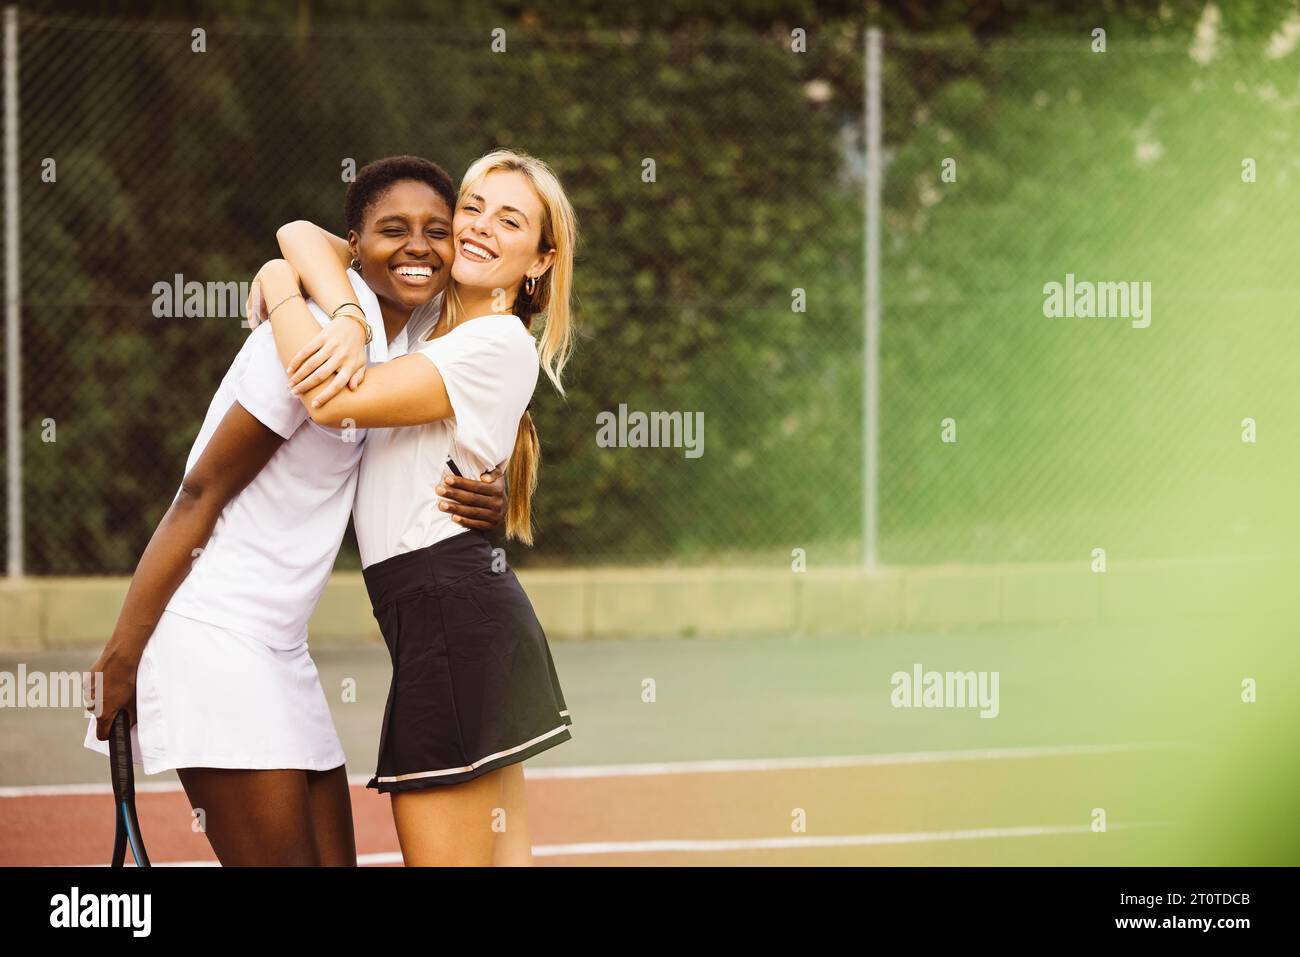 Portrait de deux belles jeunes femmes heureuses avec des vêtements de tennis et des raquettes dans un court de tennis prêt à jouer un jeu. Deux amis partageant une matinée de s. Banque D'Images